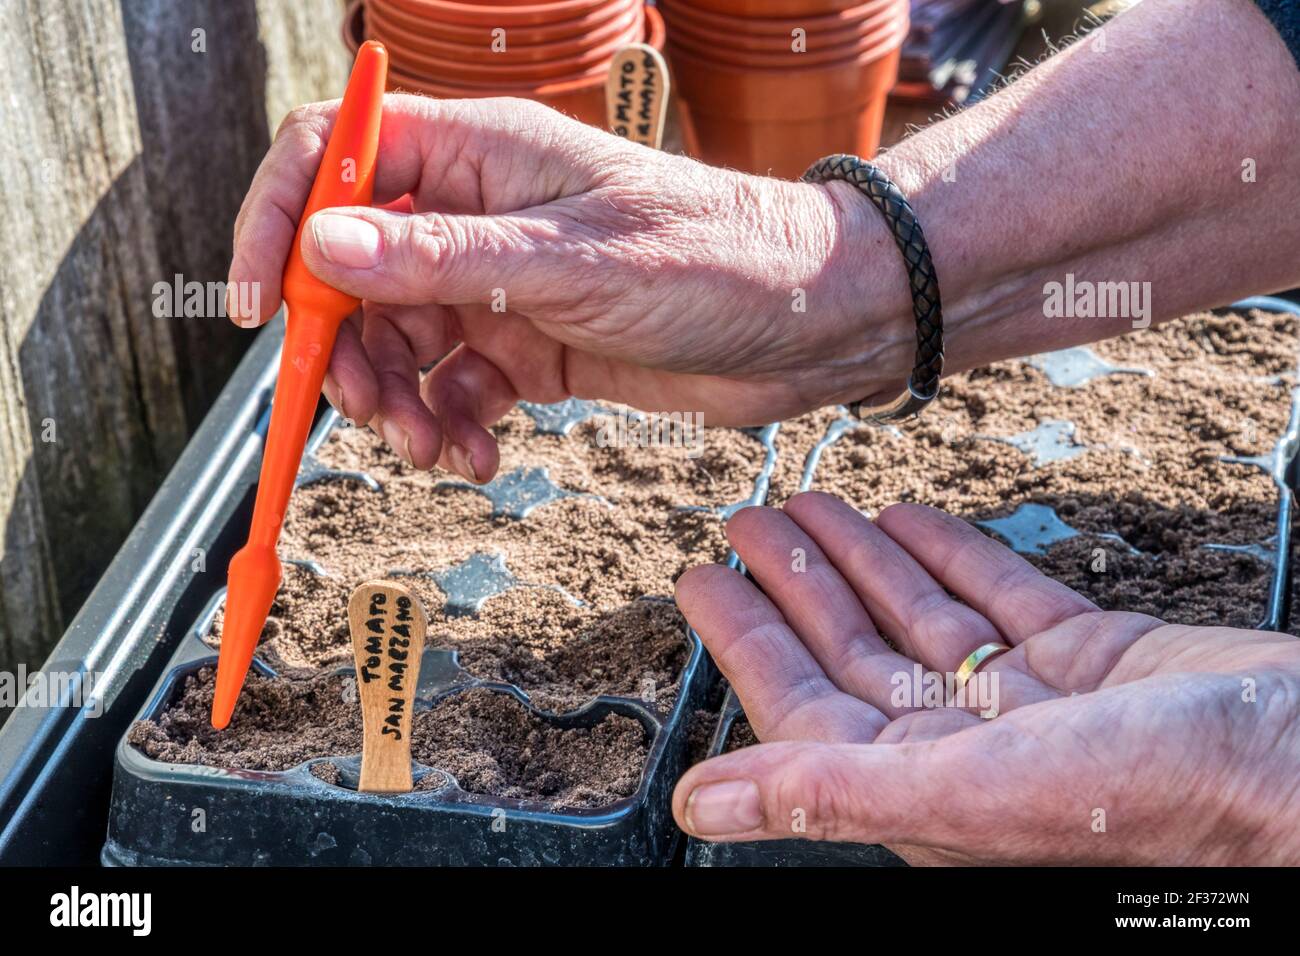 Donna che semina semi di pomodoro di San Marzano, Solanum lycopersicum, riutilizzando vassoi di piante in plastica da un giardino per evitare che finiscono in discarica. Foto Stock